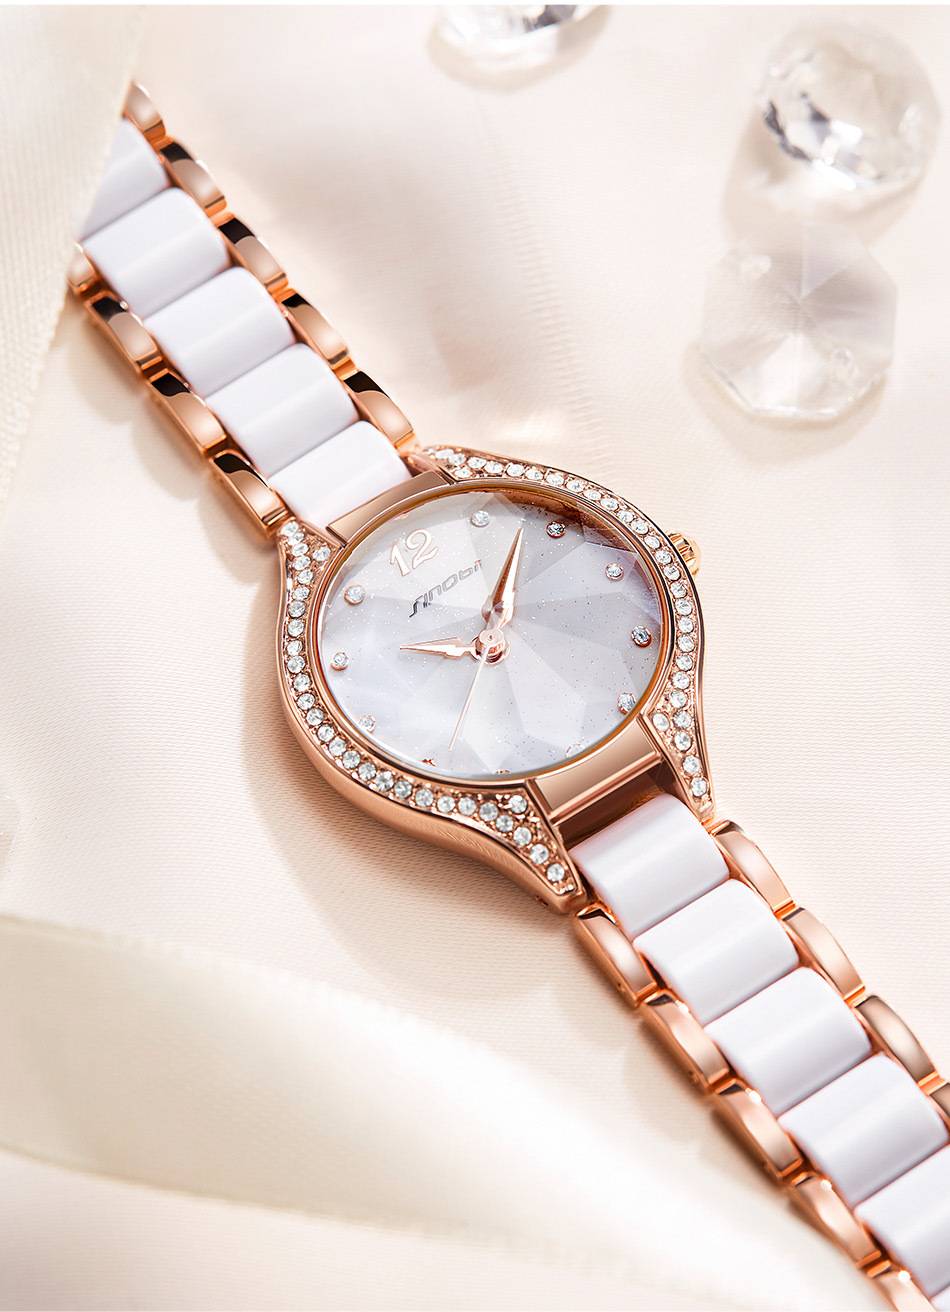  Luxury Women Watch Bracelet Lady Fashion Charming Chain Style Female Quartz Wristwatch 